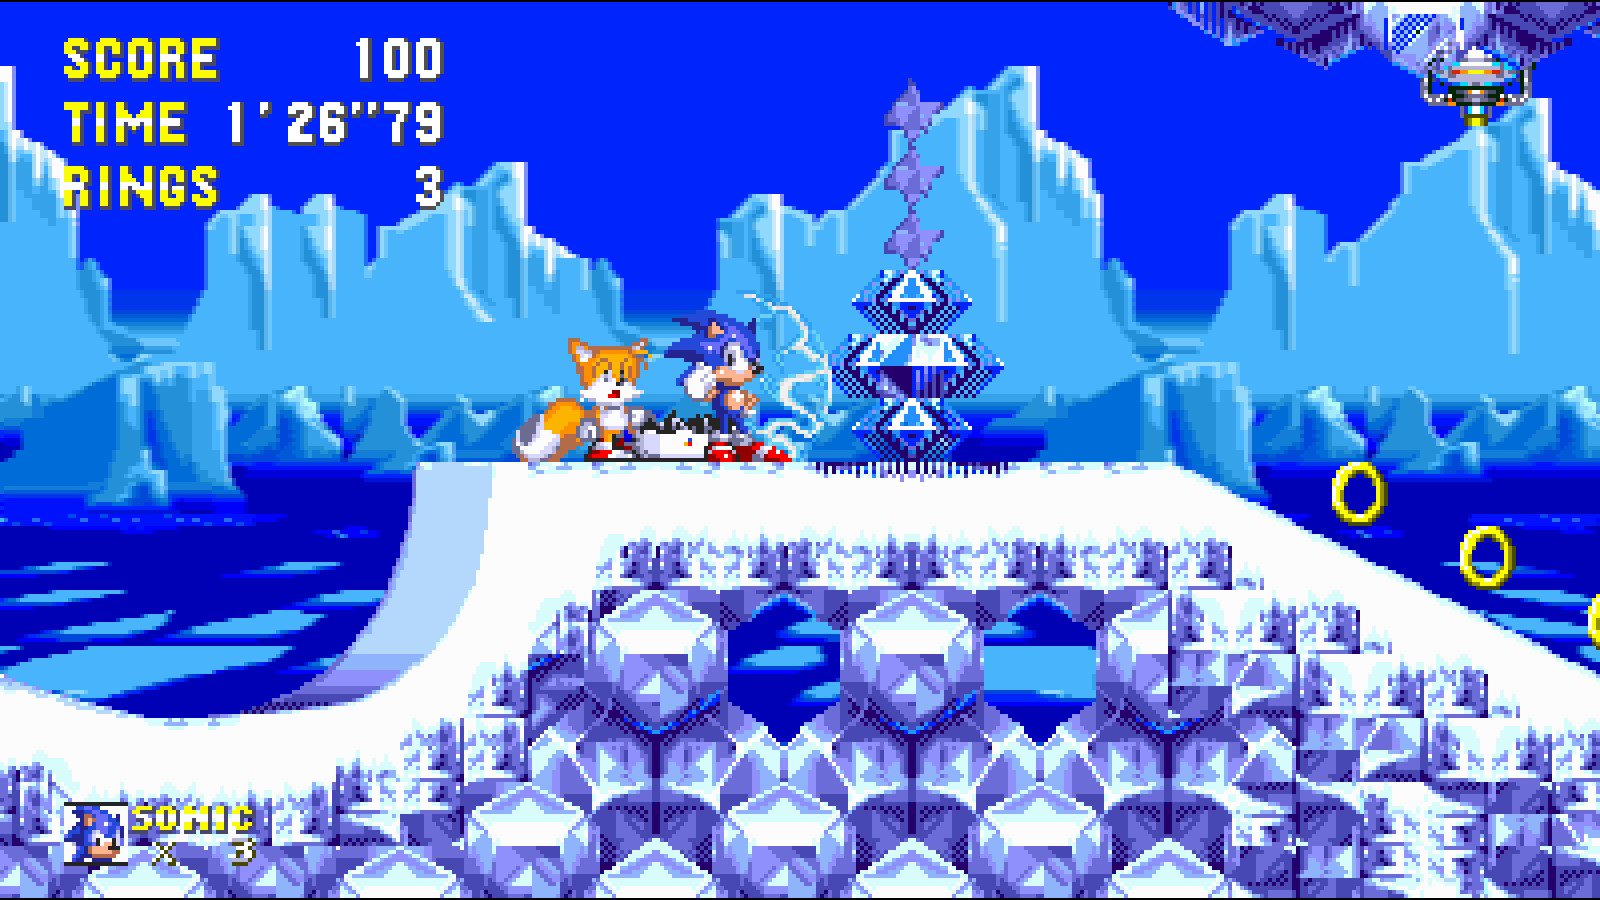 Uzmovi com sonic 3. Соник 3 Ice cap. Sonic 3 АИР. Соник 3 a.i.r. Sonic 3 Ice cap Zone.